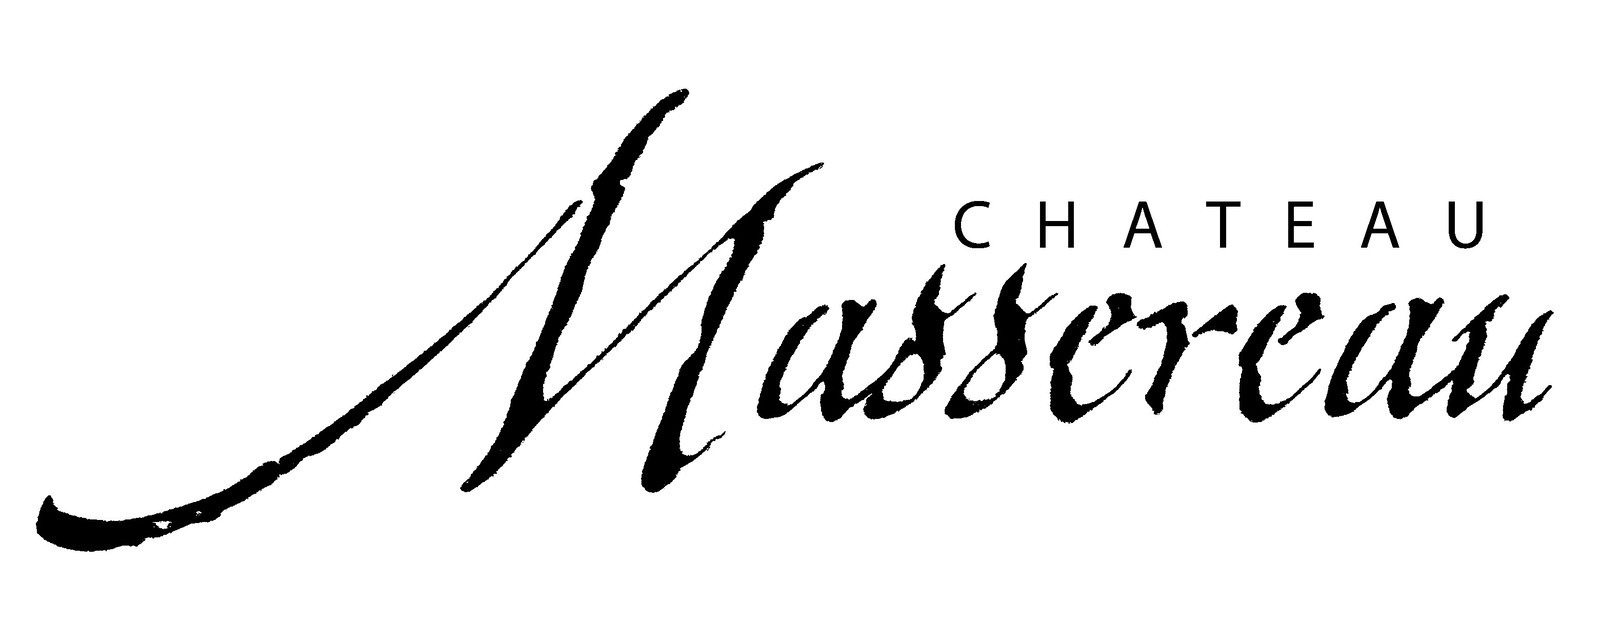 Chateau Massereau